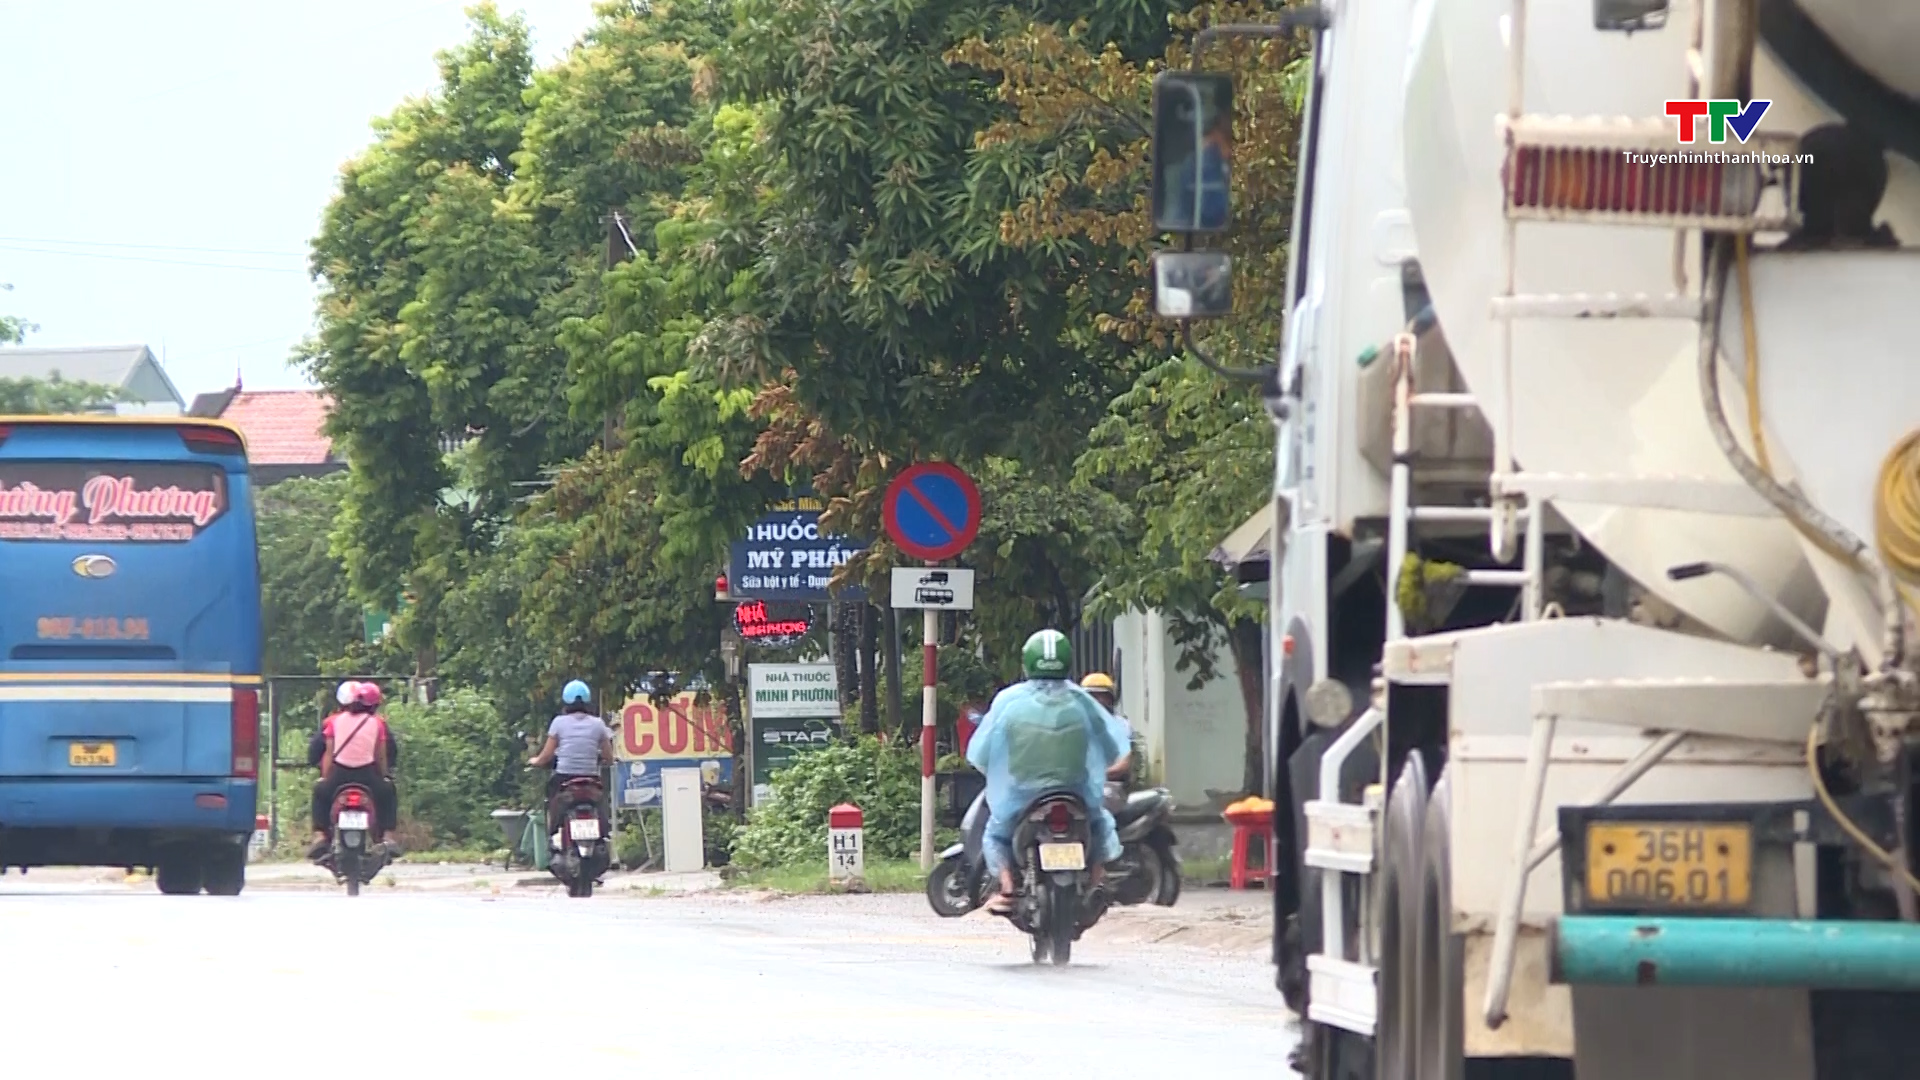 Xử lý nghiêm tình trạng xe dừng đỗ sai quy định tại thành phố Thanh Hoá- Ảnh 2.